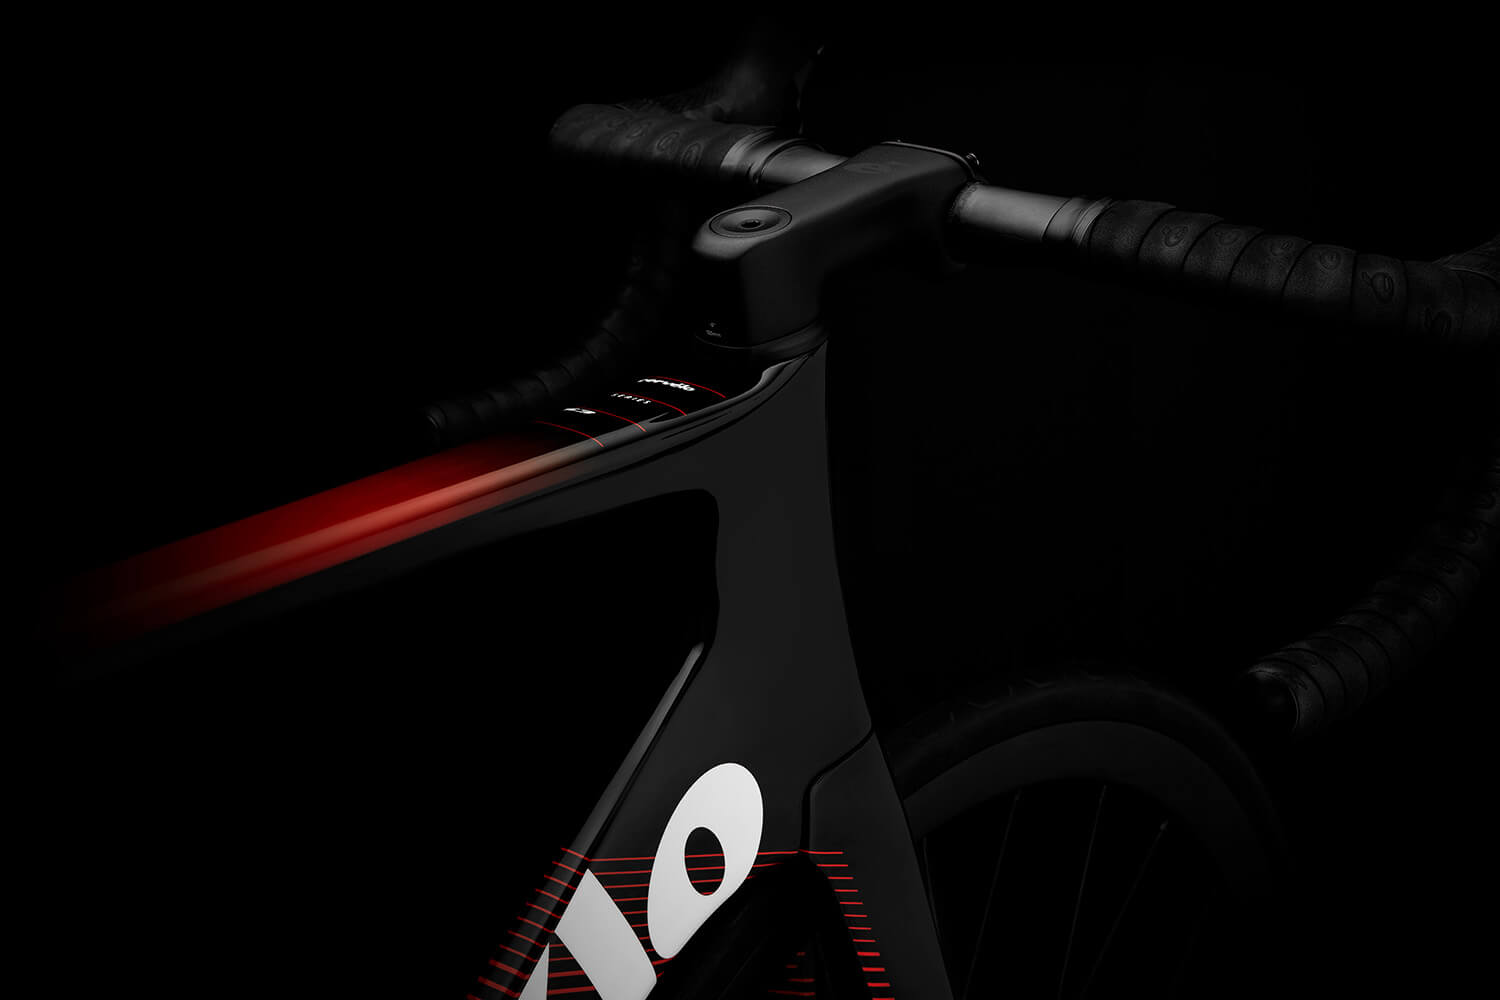 【文末有福利】全能空力自行车的再进化——全新Cervelo S3